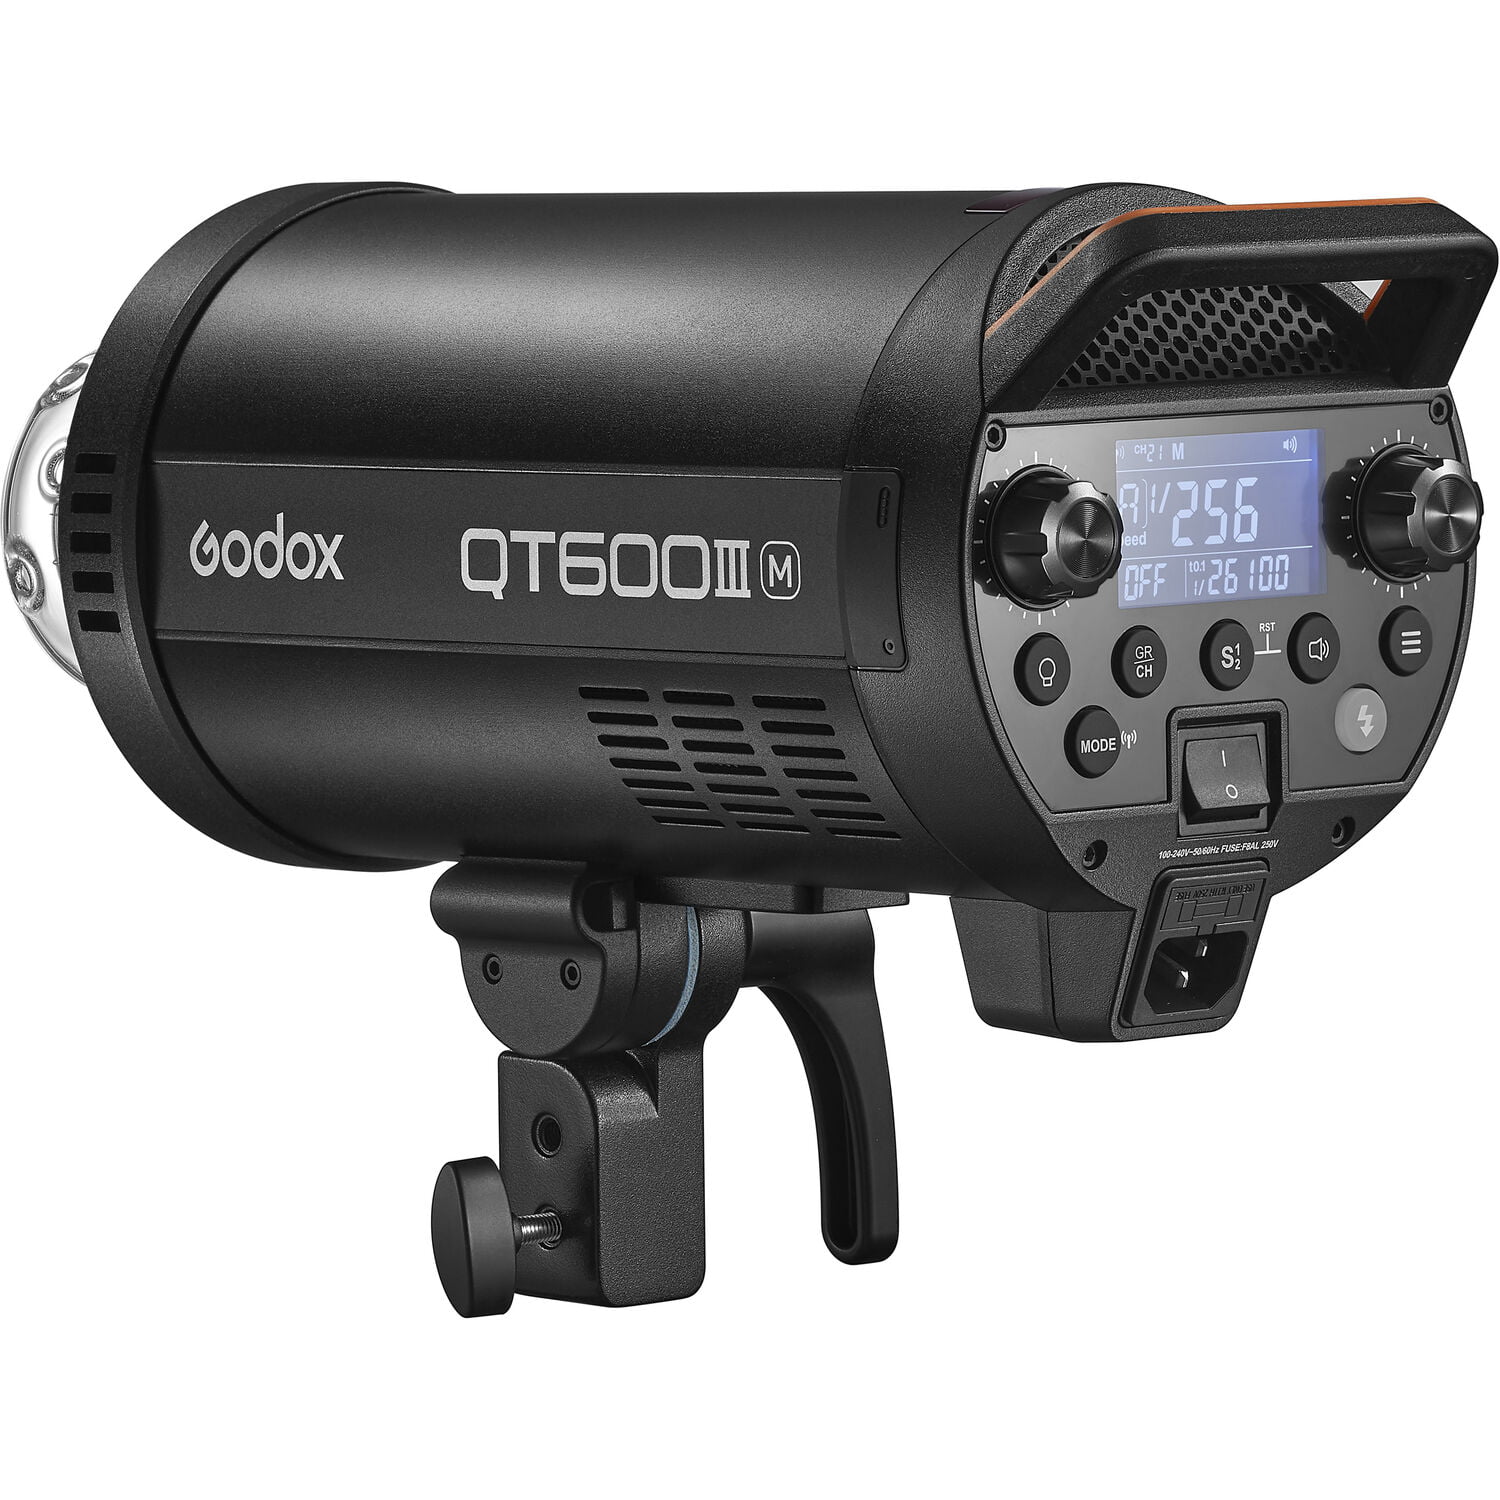 Godox QT600iiiM HSS Studio Strobe